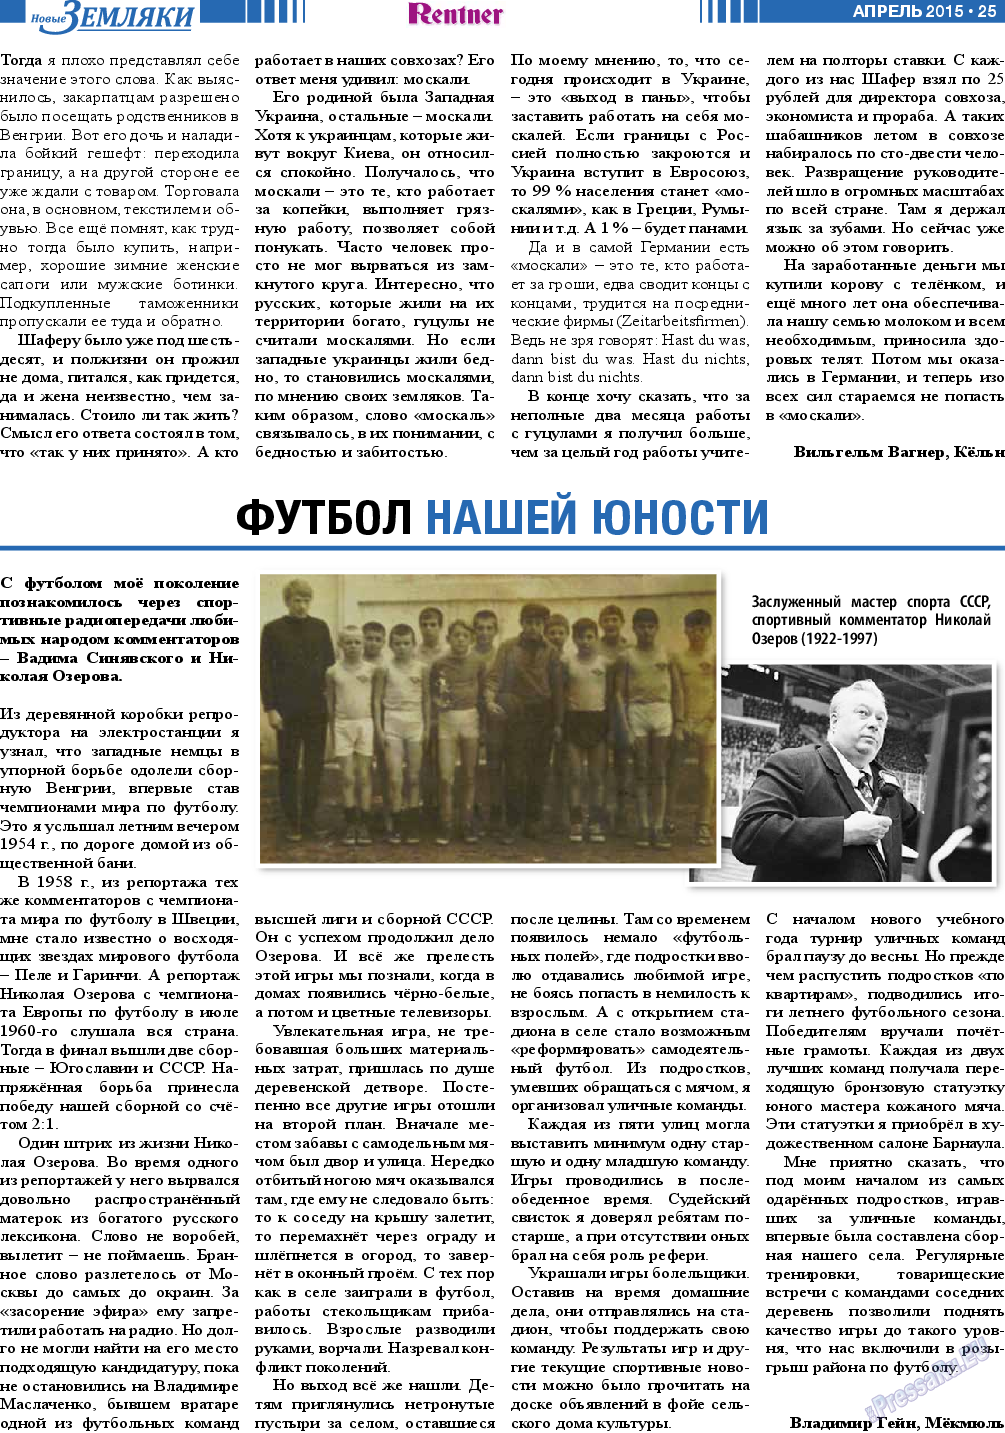 Новые Земляки, газета. 2015 №4 стр.25